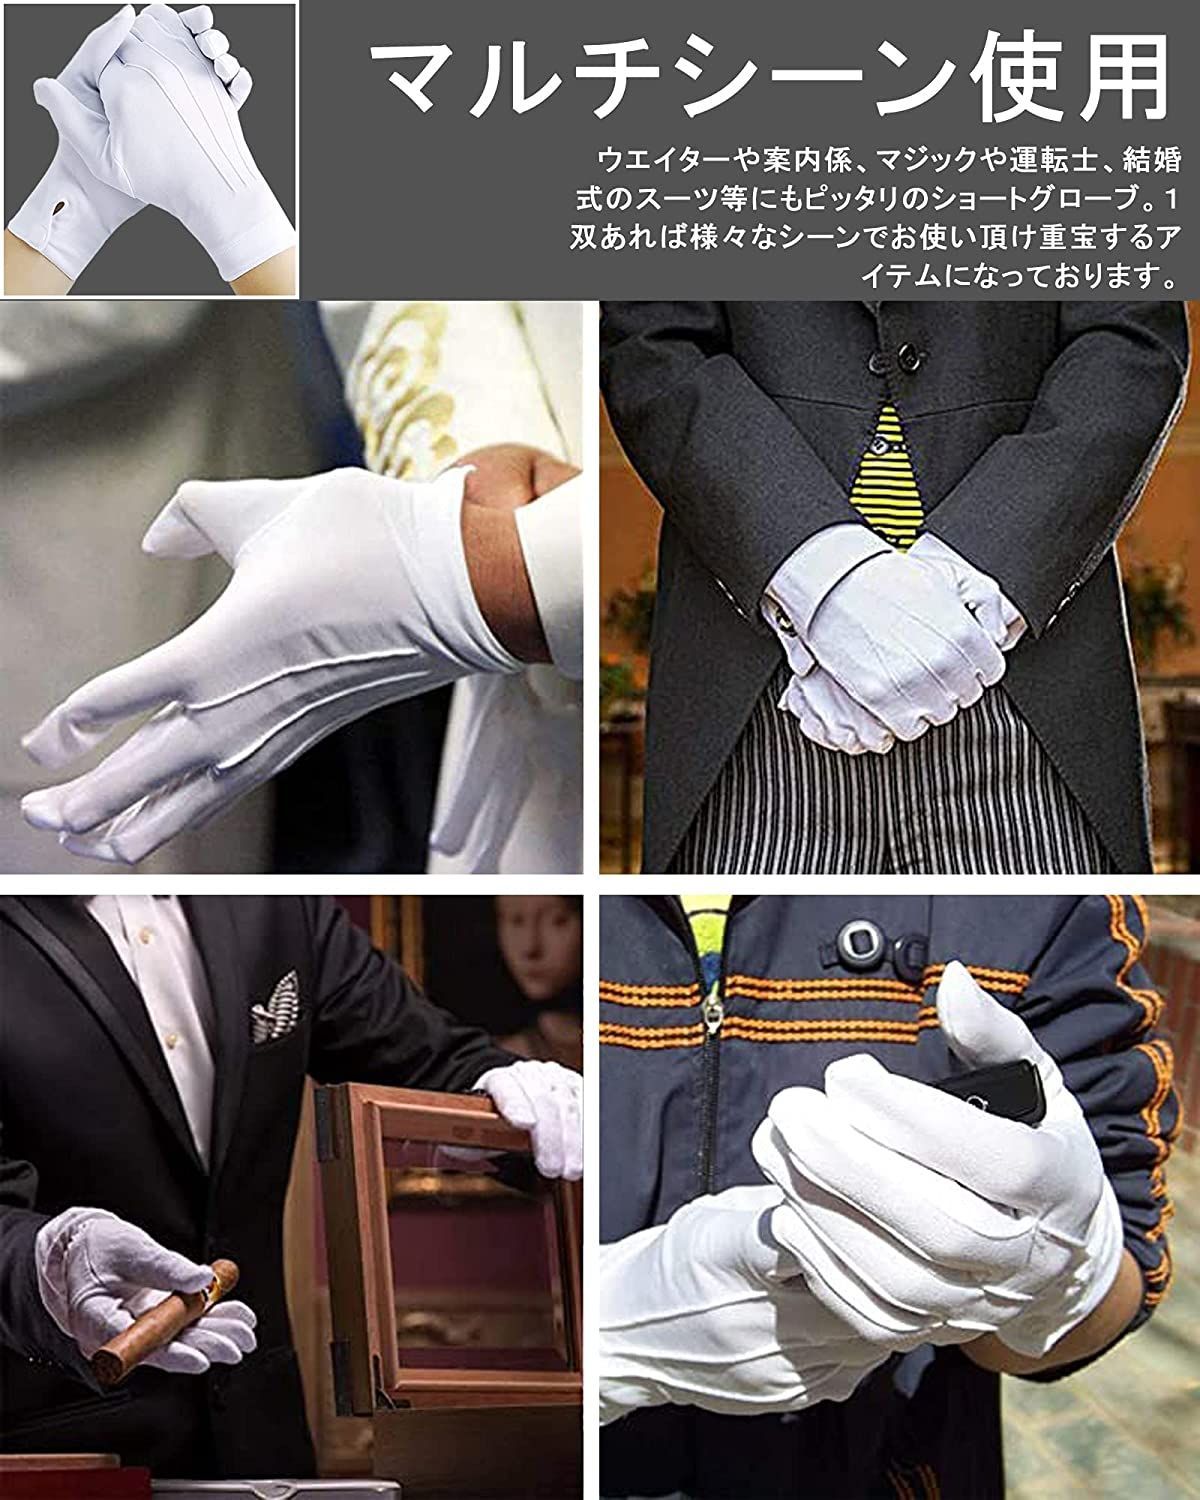 お1人様1点限り】 フォーマル 礼服 グローブ 手袋 男性 白手袋 結婚式 式典用 運転用 警備